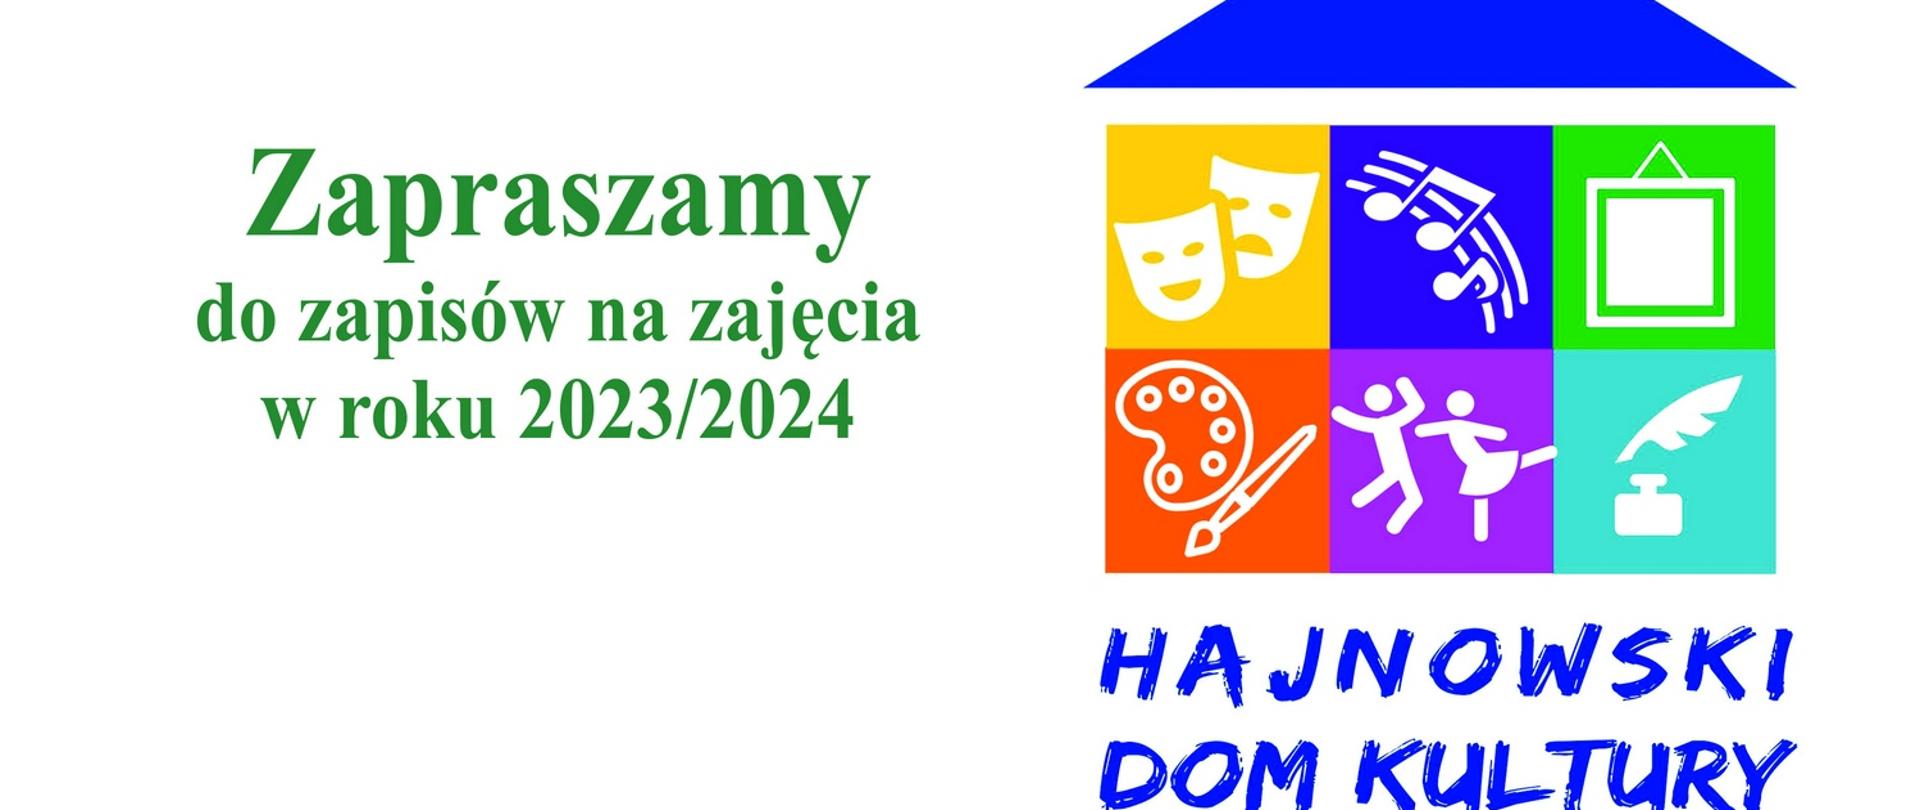 Na białym tle logo Hajnowskiego Domu Kultury (kolorowe piktogramy aktywności artystycznych składające się w dom) oraz zaproszenie do zapisów